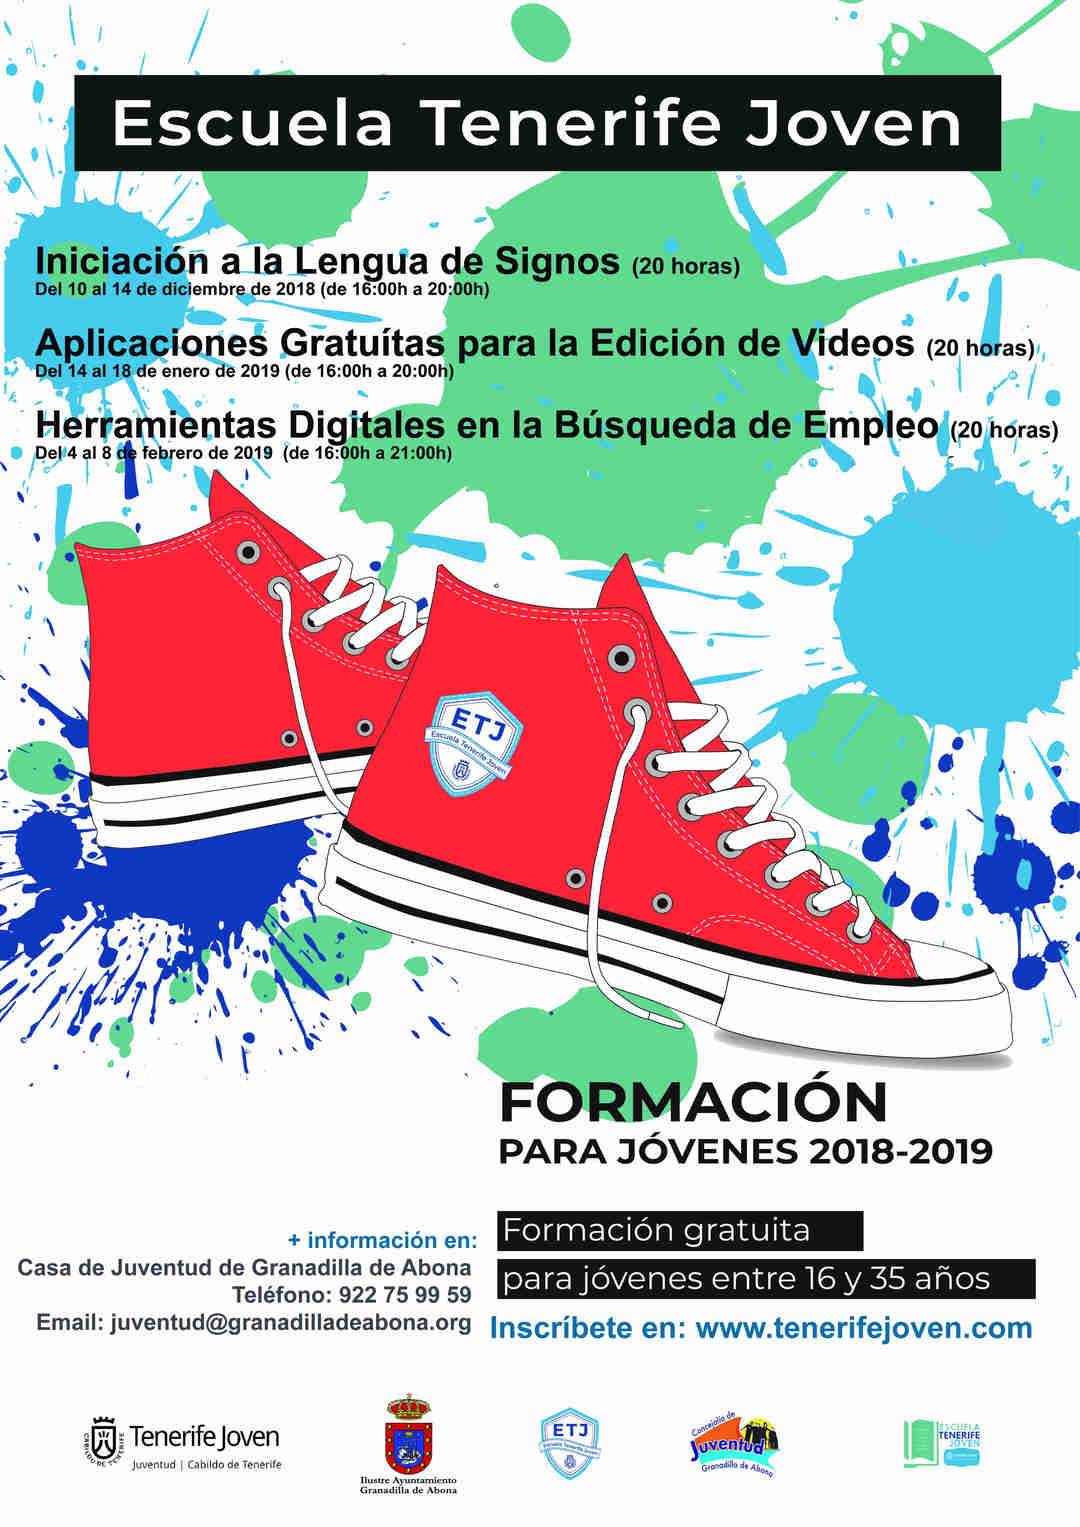 El curso gratuito ‘Iniciación a la Lengua de Signos’, de la ‘Escuela Tenerife Joven’, del 10 al 14 de diciembre